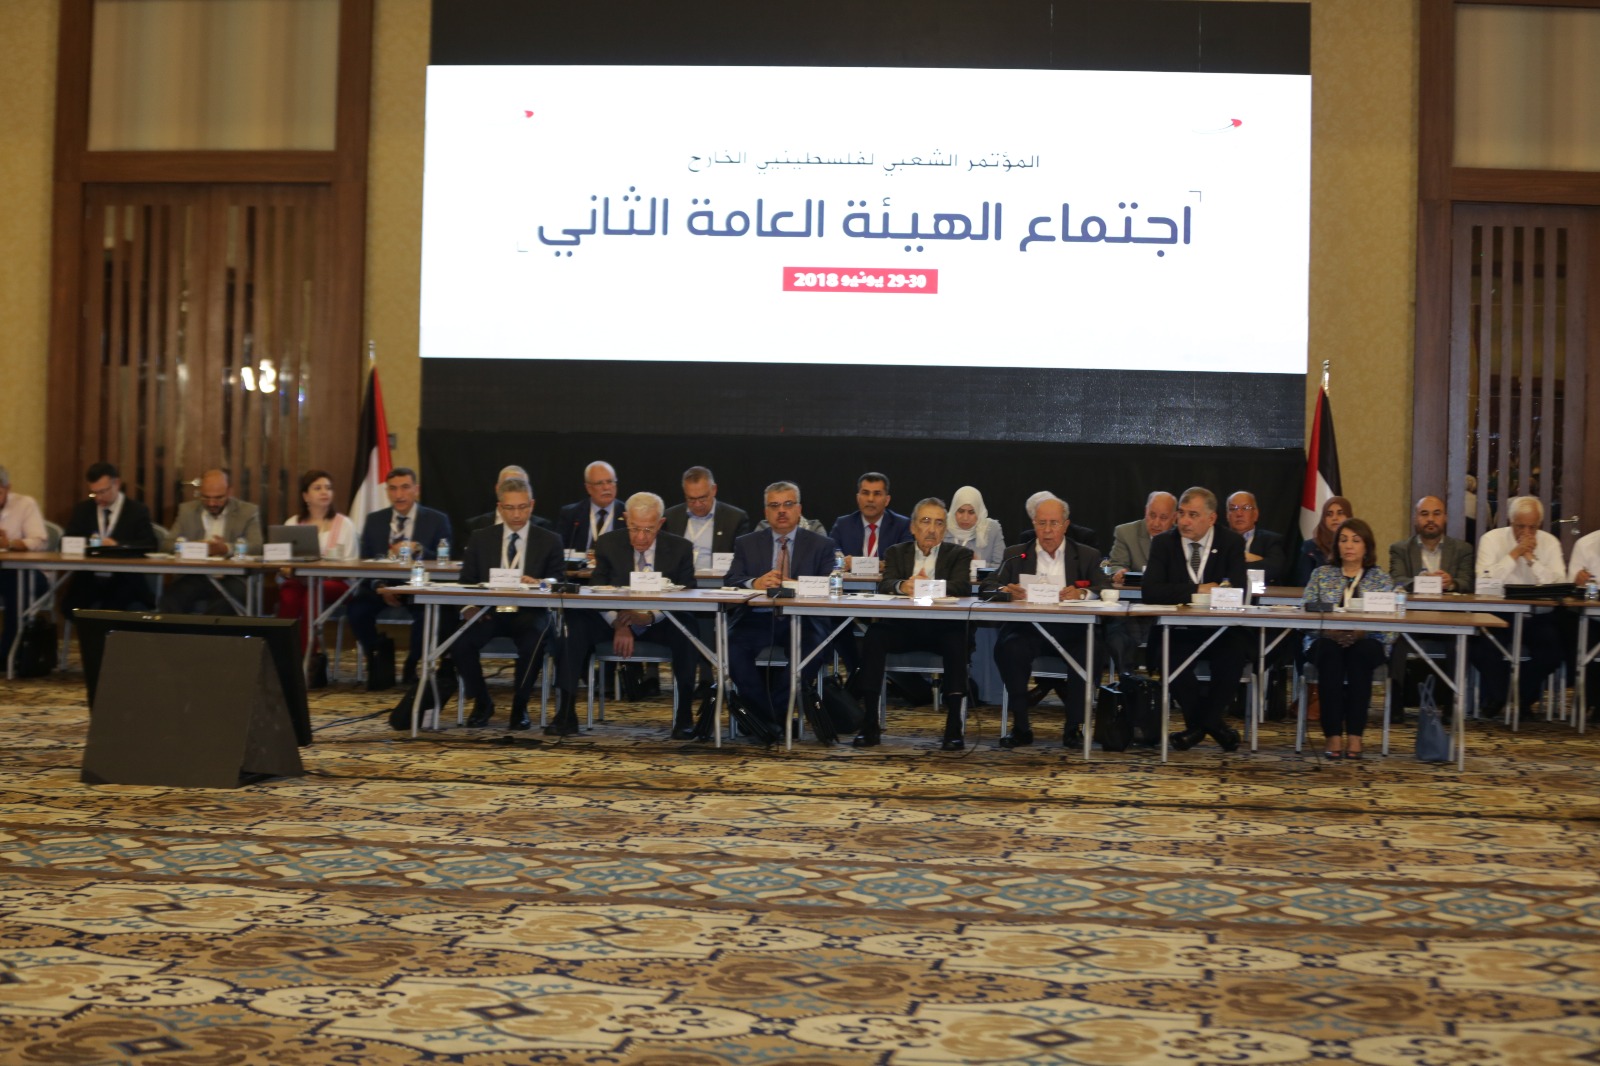 انطلاق أعمال اجتماع الهيئة العامة الثاني للمؤتمر الشعبي لفلسطينيي الخارج في اسطنبول